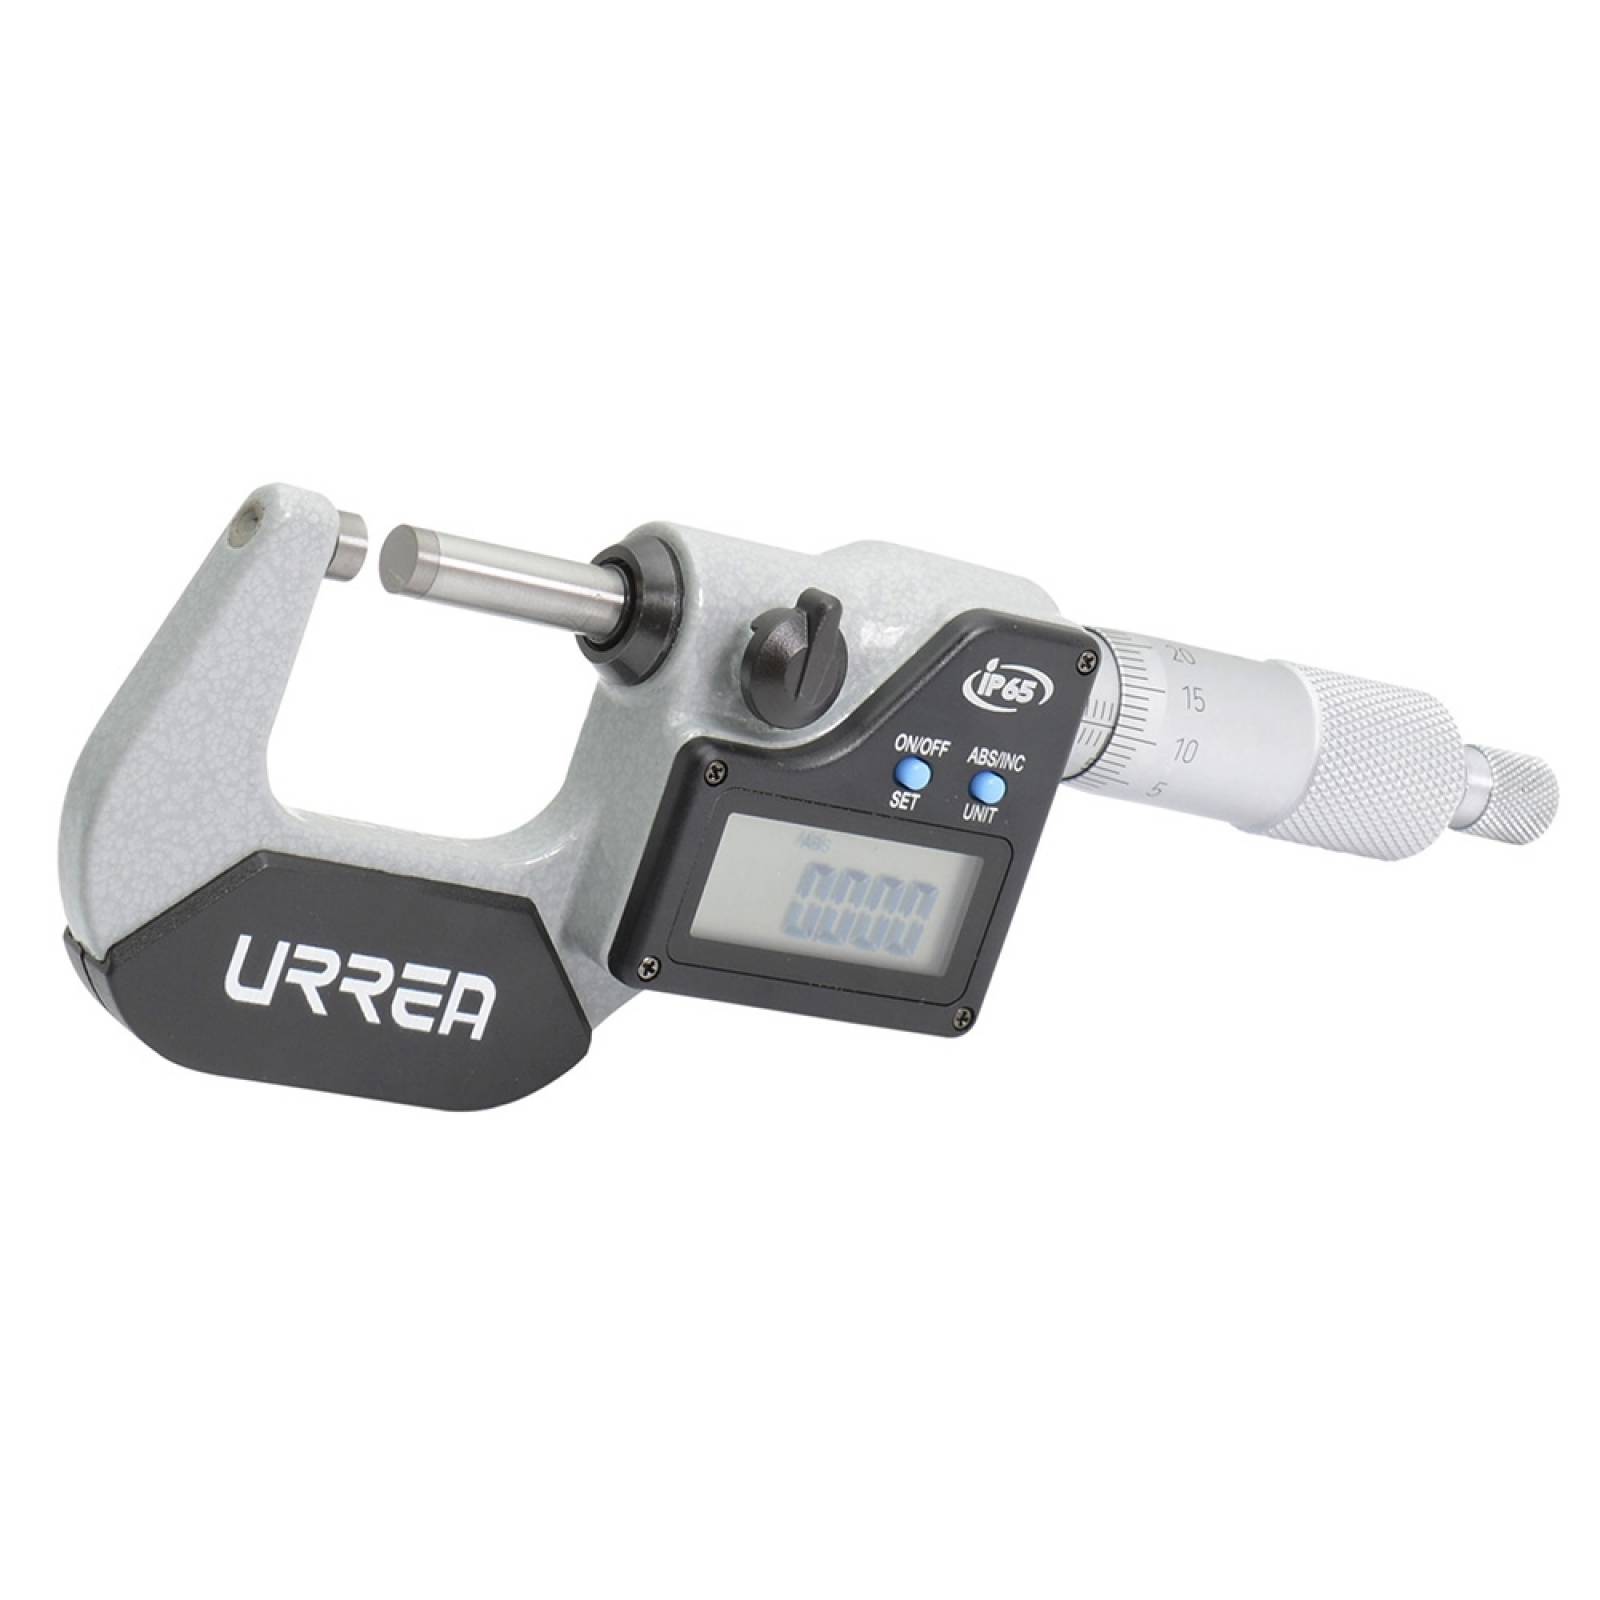 Micrómetro digital 1-2"  UMM12 Urrea